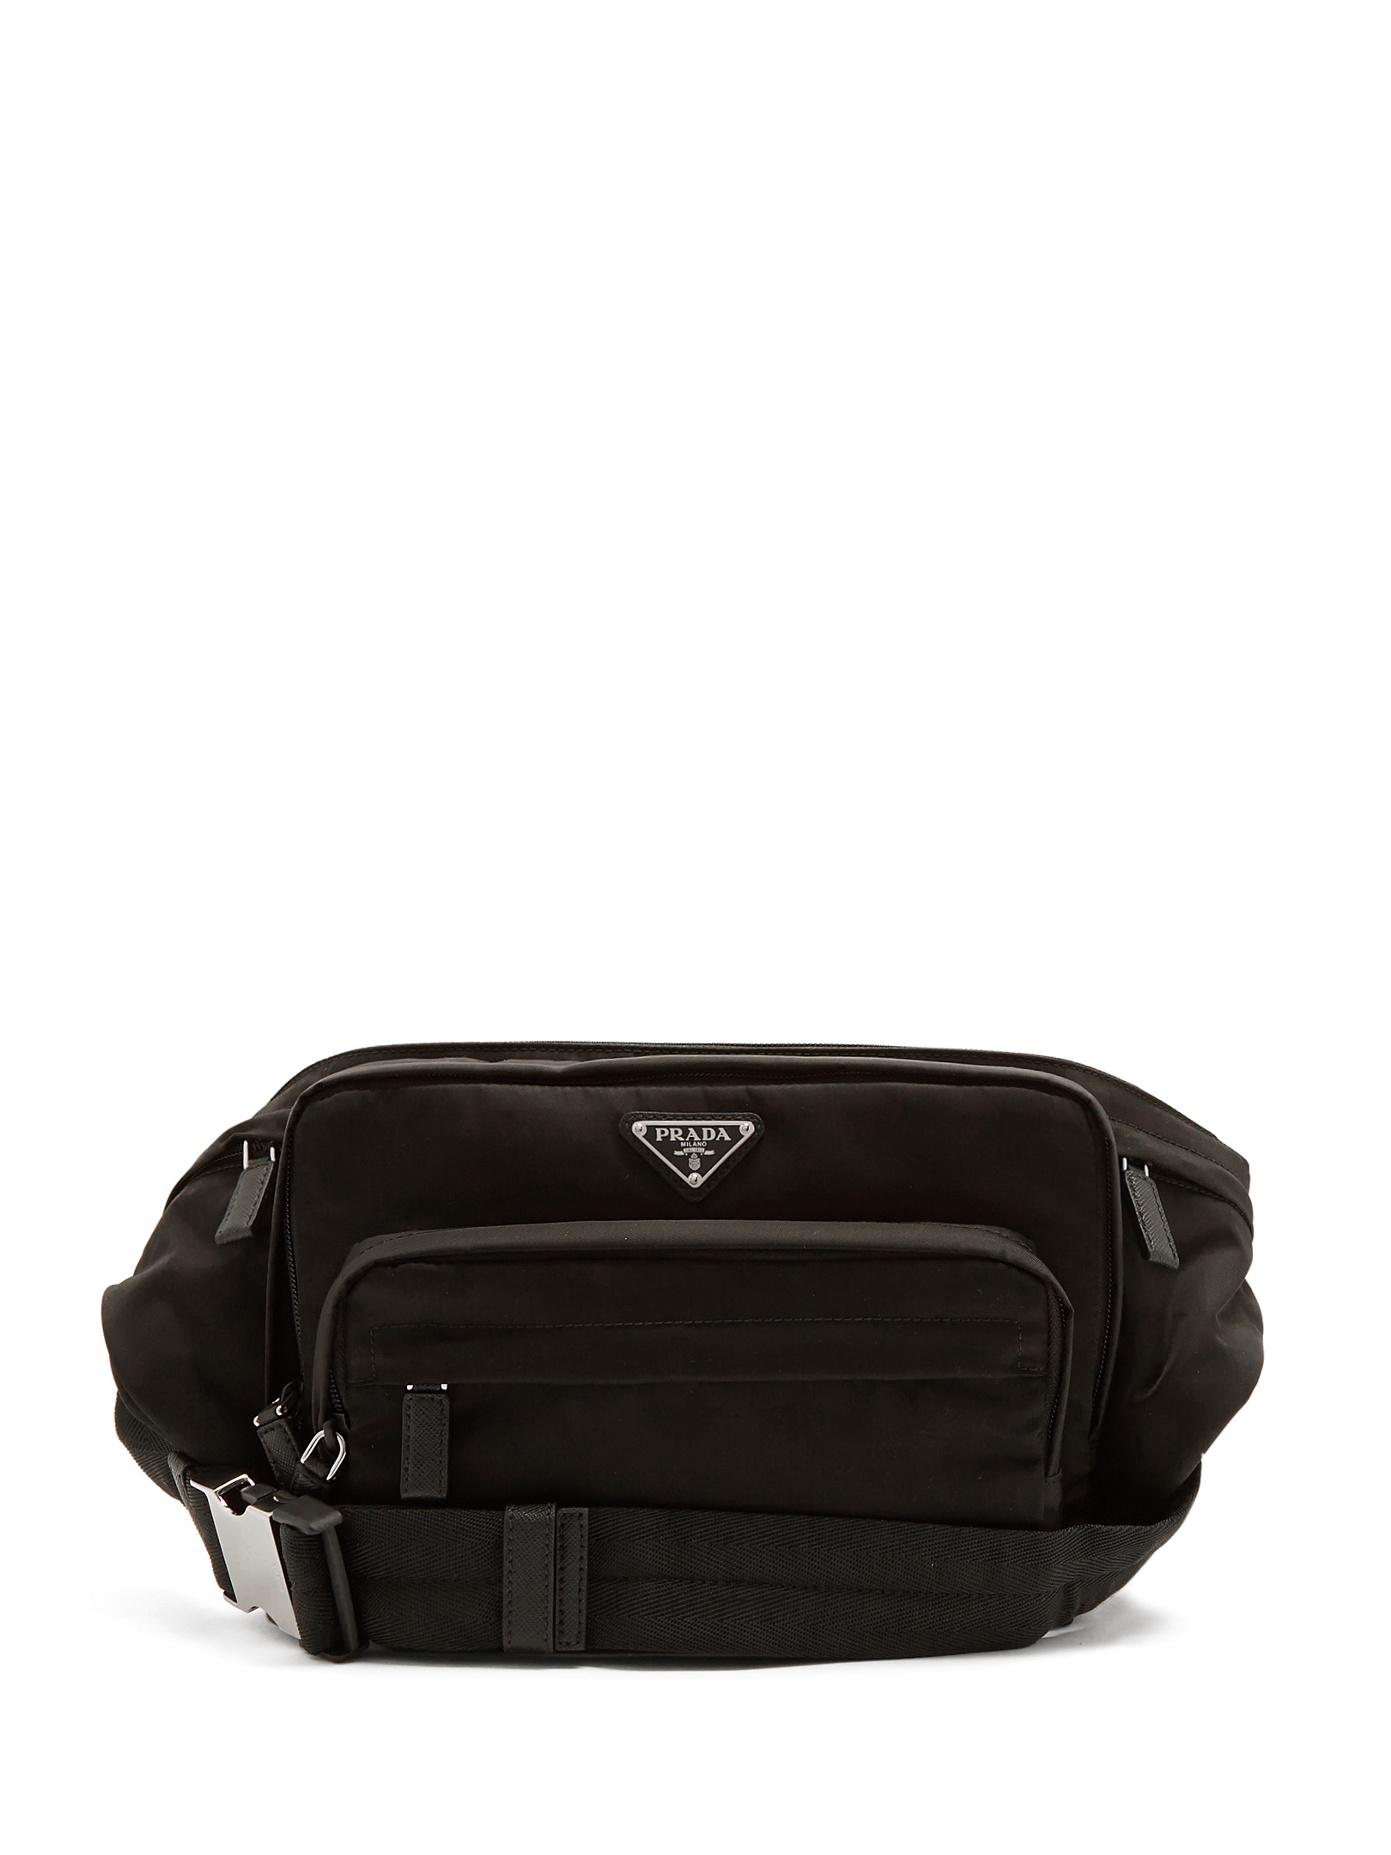 Prada Synthetic Nylon Belt Bag in Black for Men - Lyst